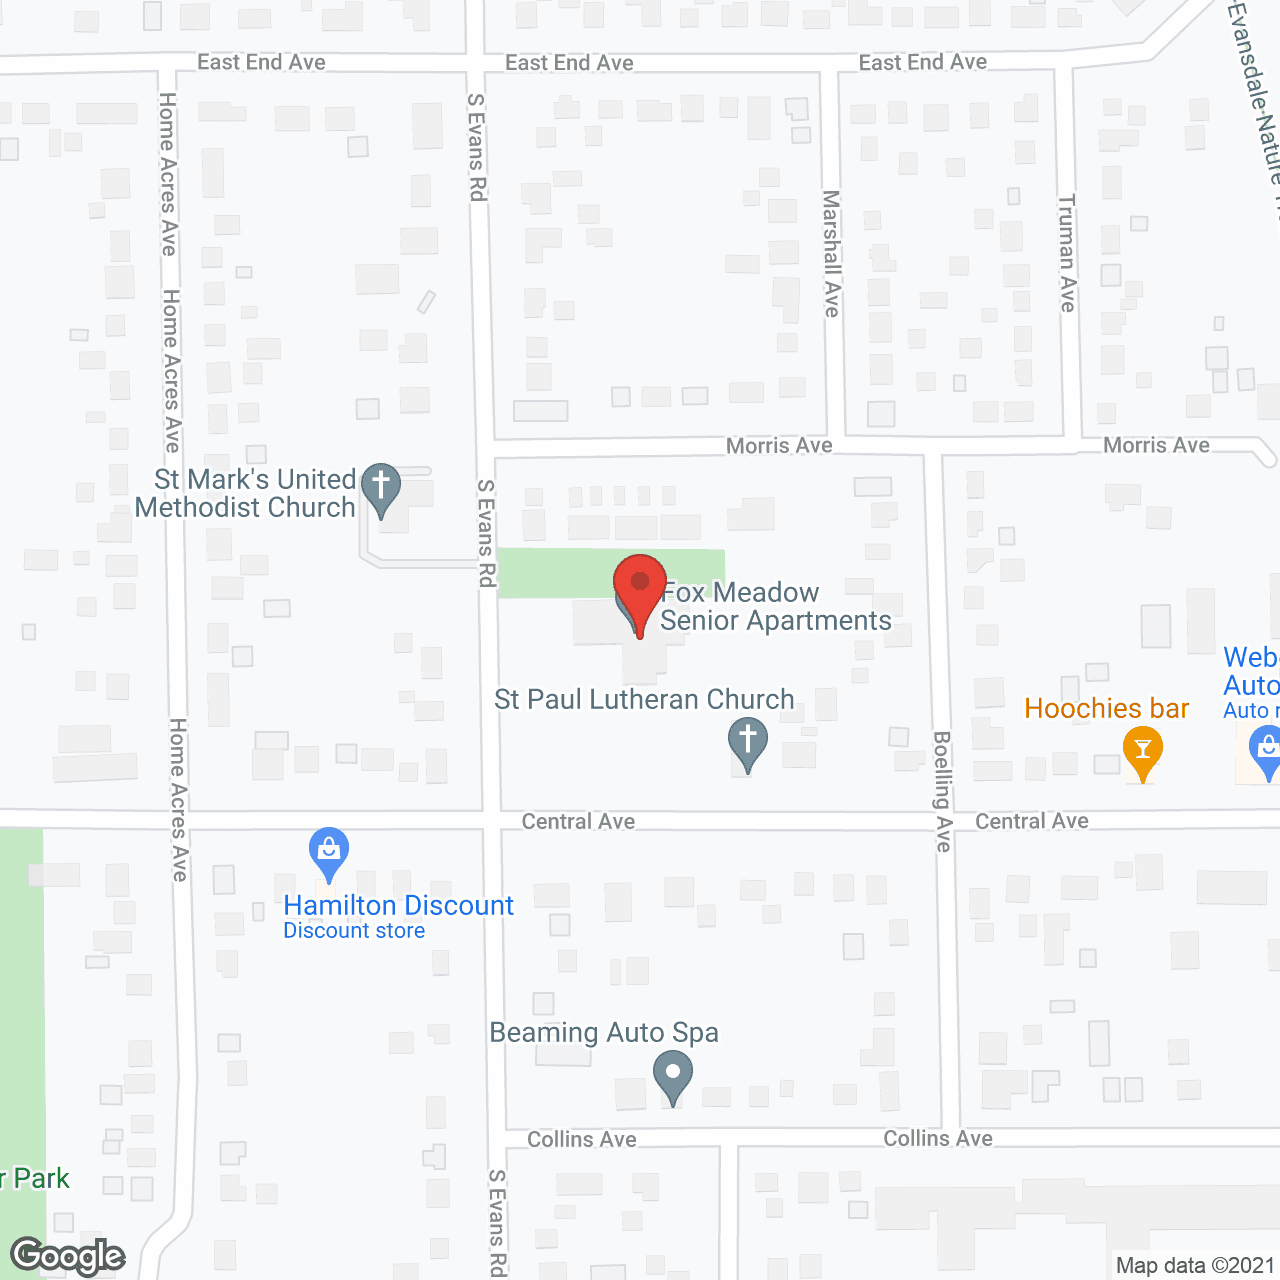 Fox Meadow in google map